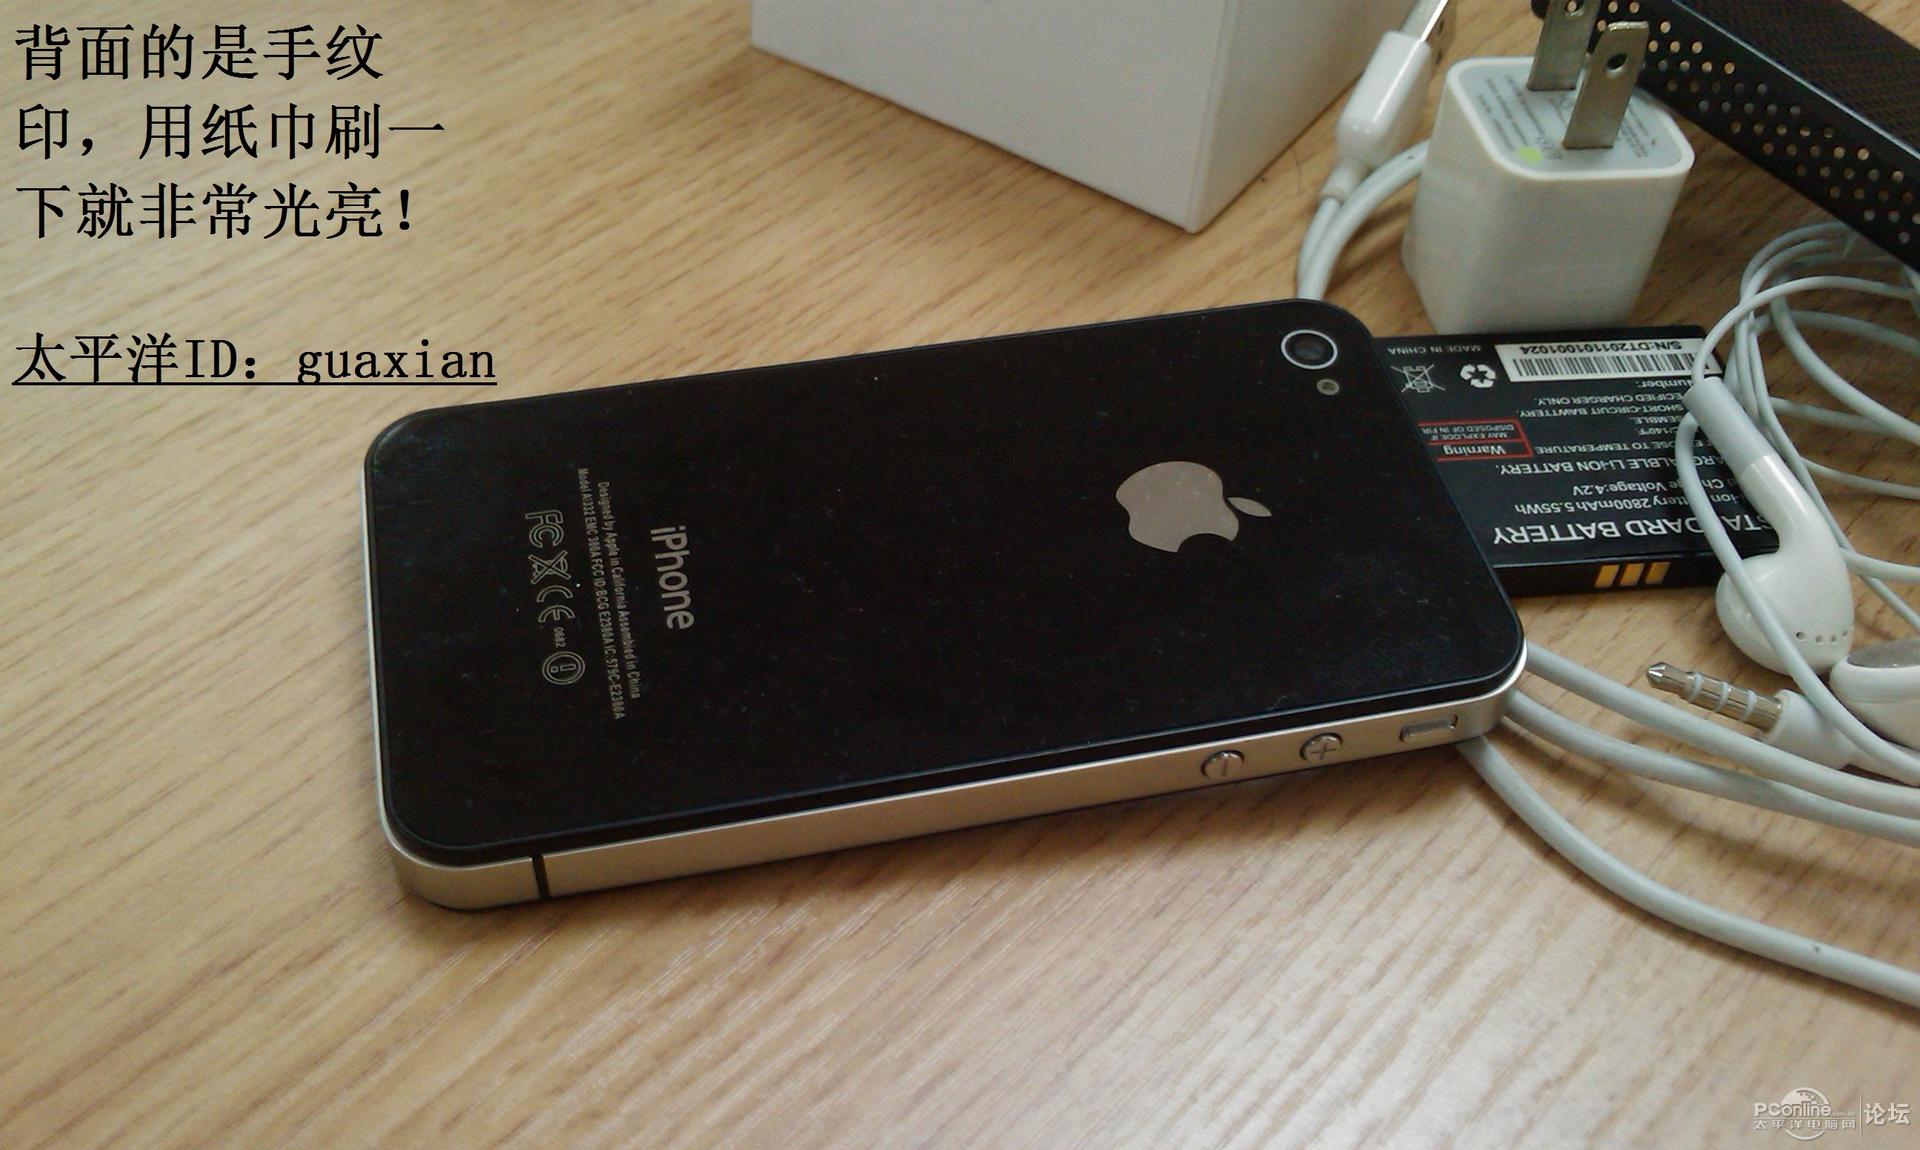 电信+移动(双模双卡双待)1:1苹果4GS